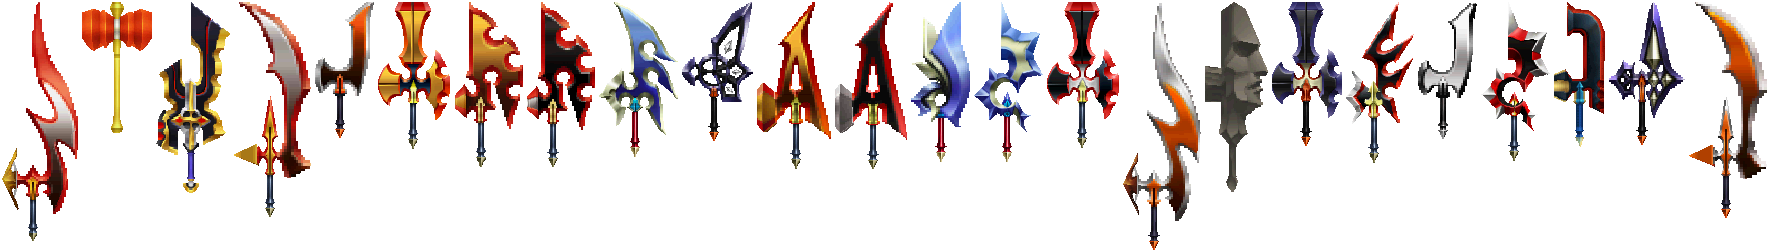 Kingdom Hearts: 358/2 Days - Axe Swords